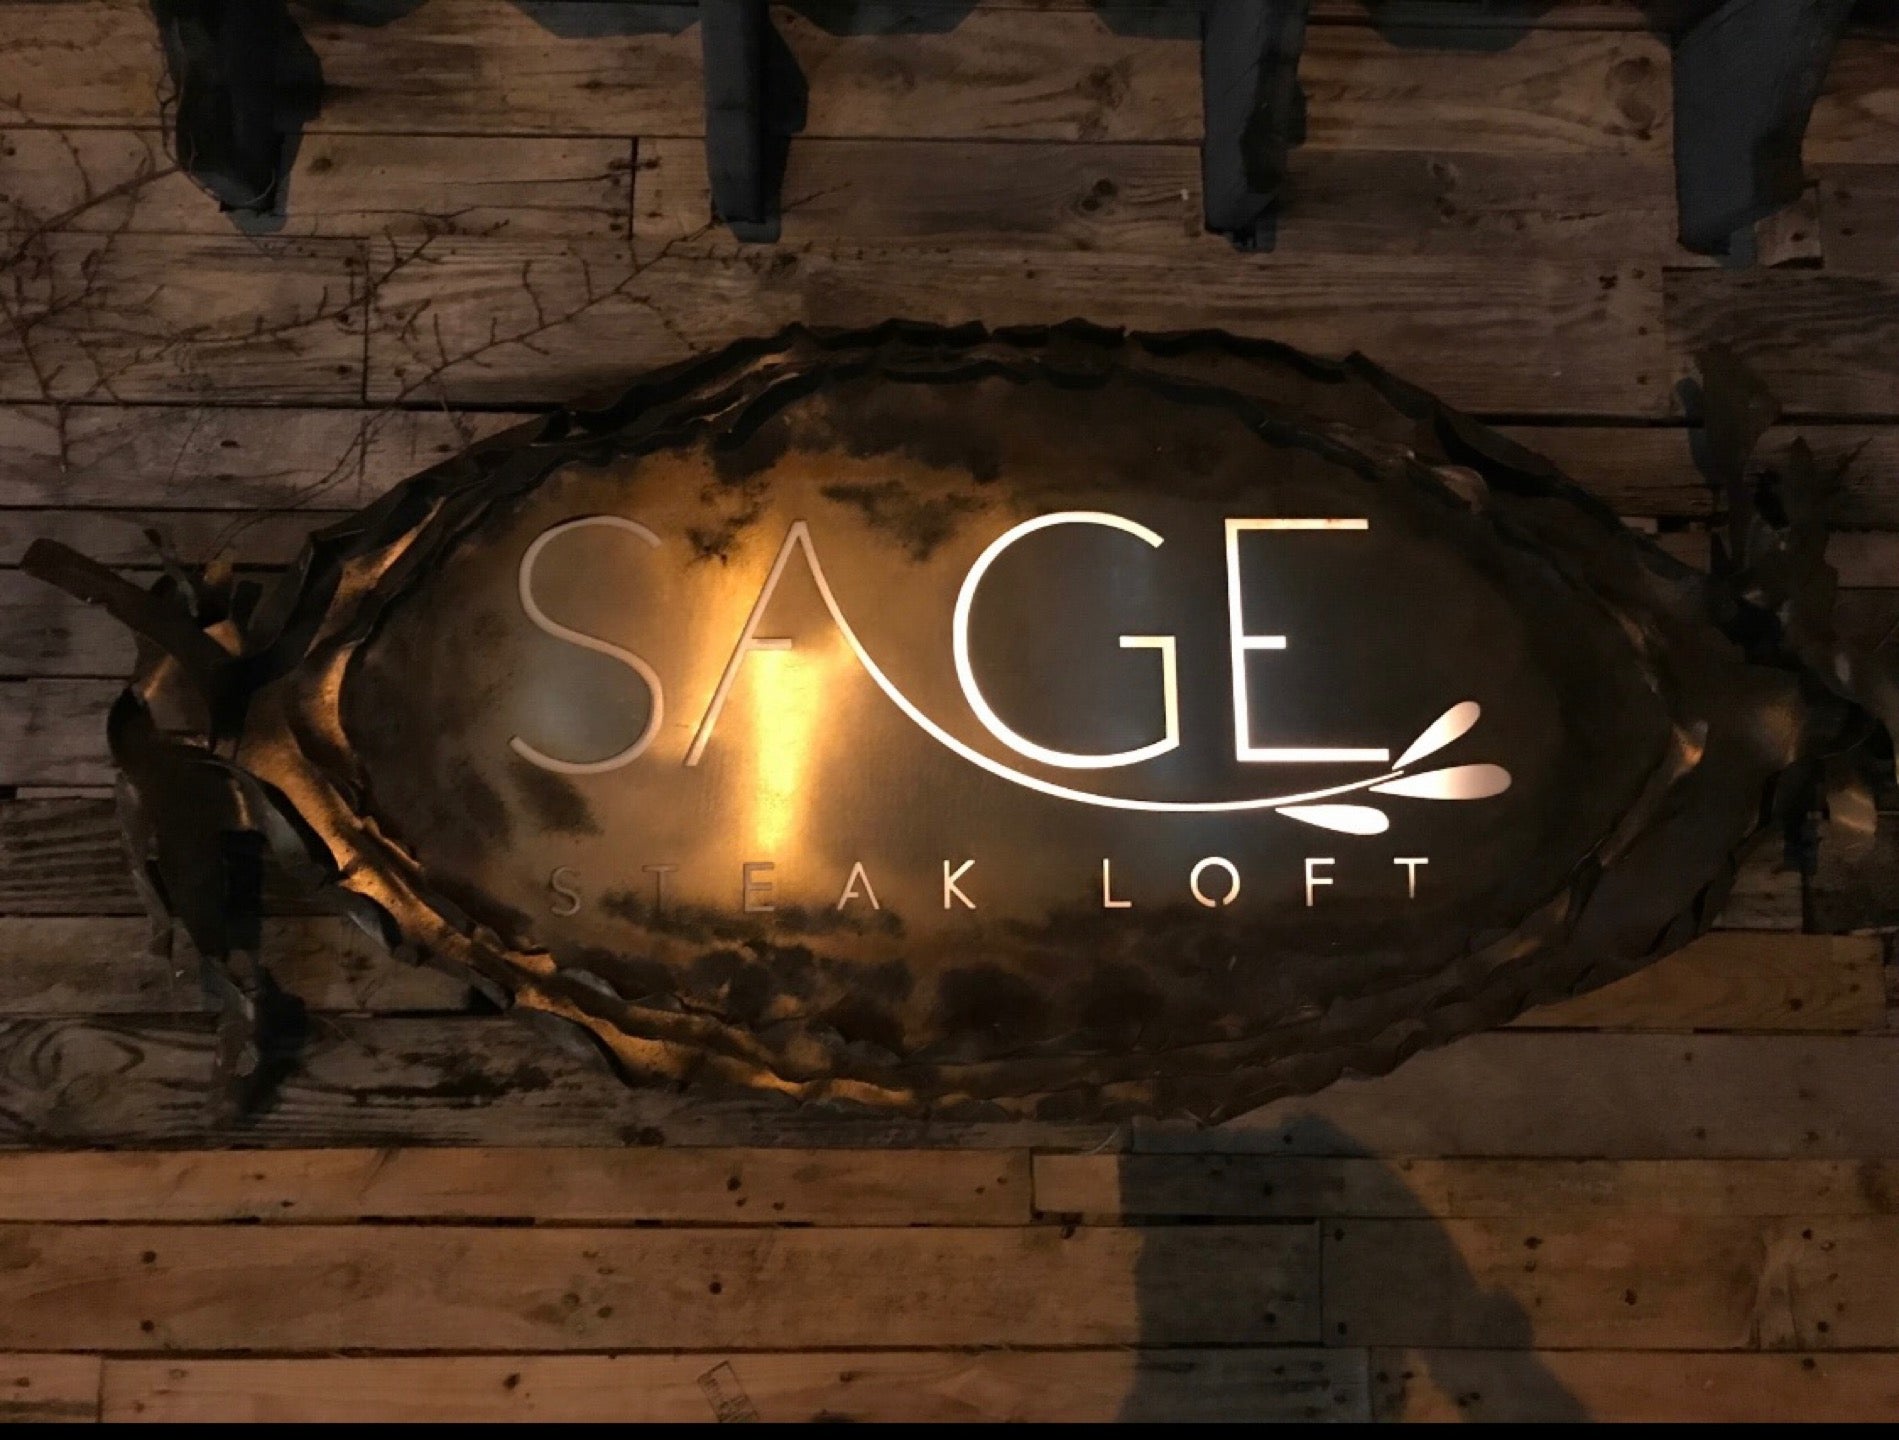 Sage Steak Loft